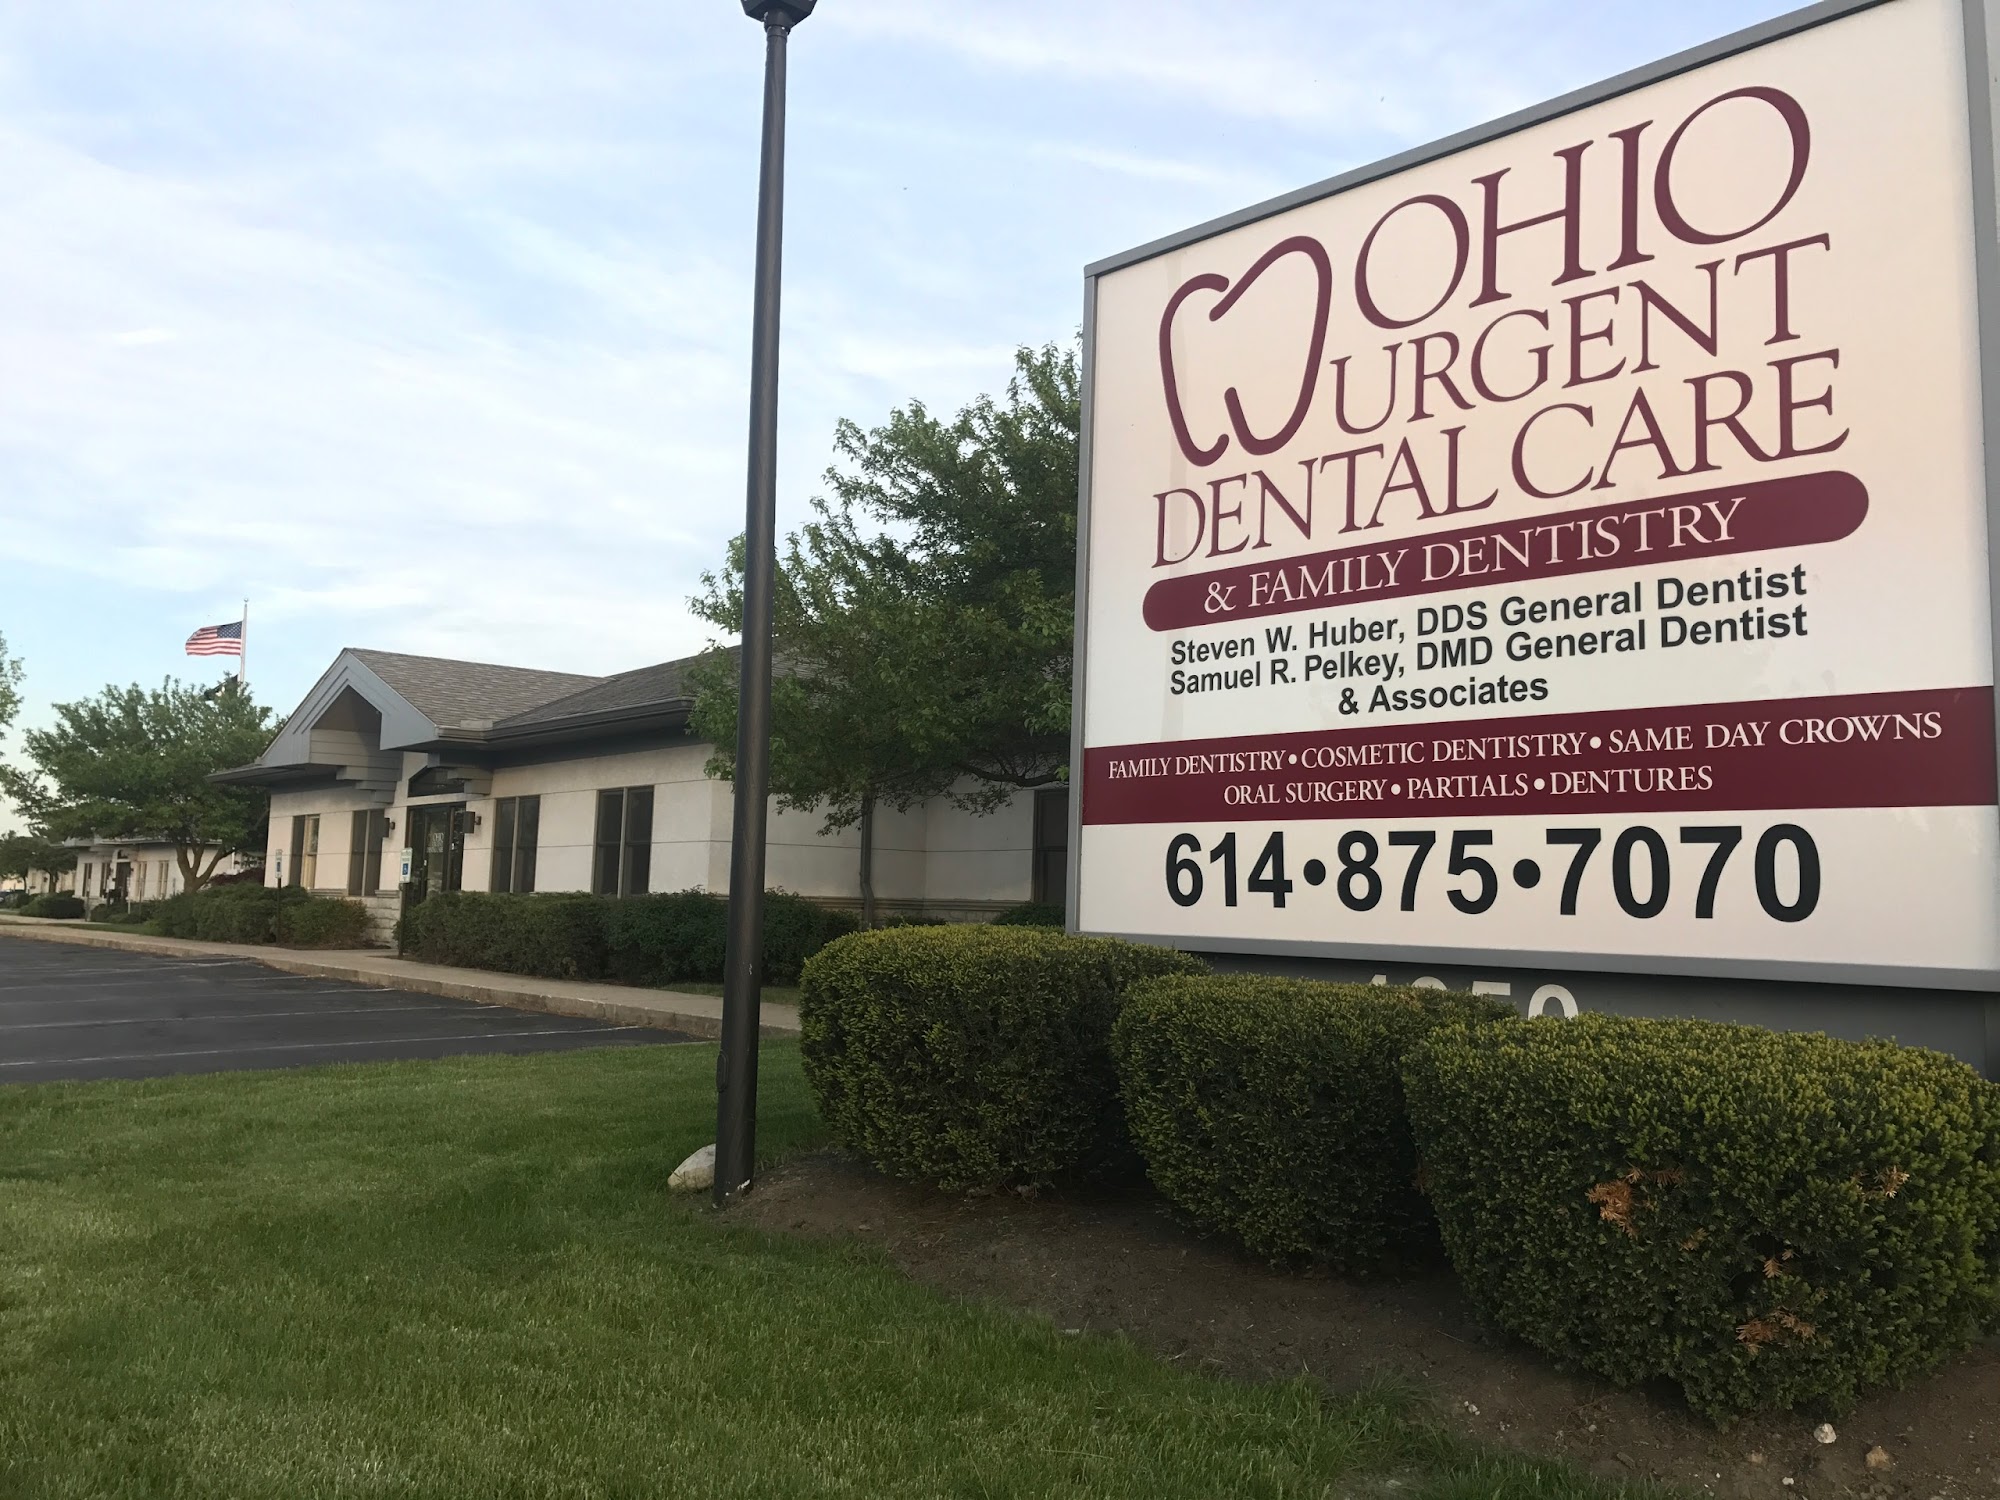 Ohio Urgent Dental Care